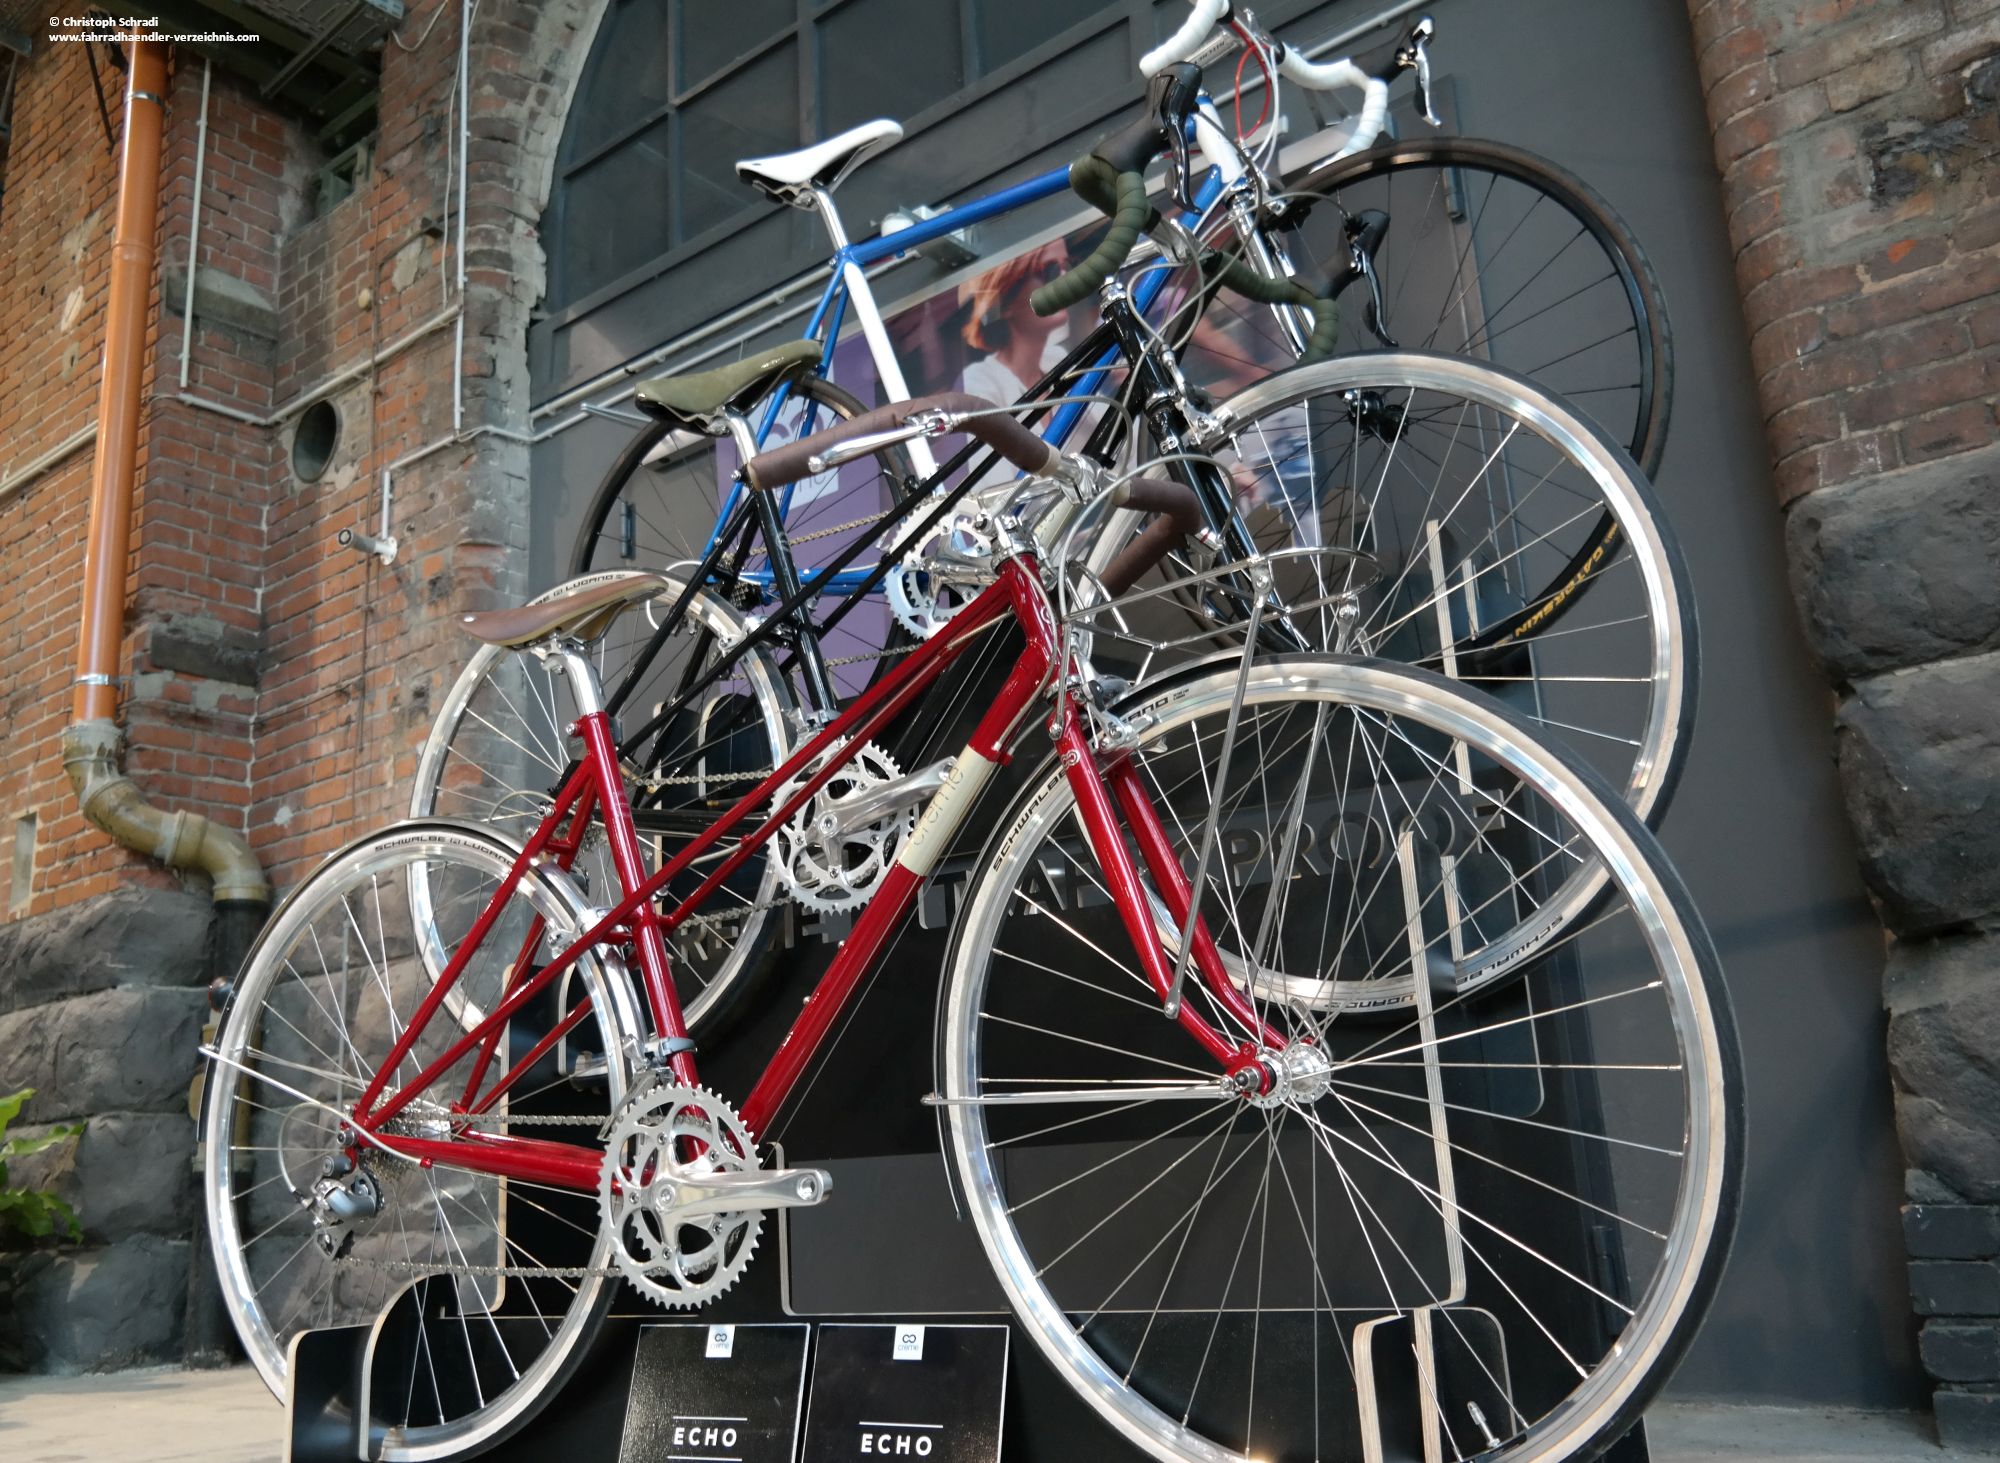 Citybikes und Urbanbikes sind auf der diesjährigen Fahrradschau zahlreich vertreten